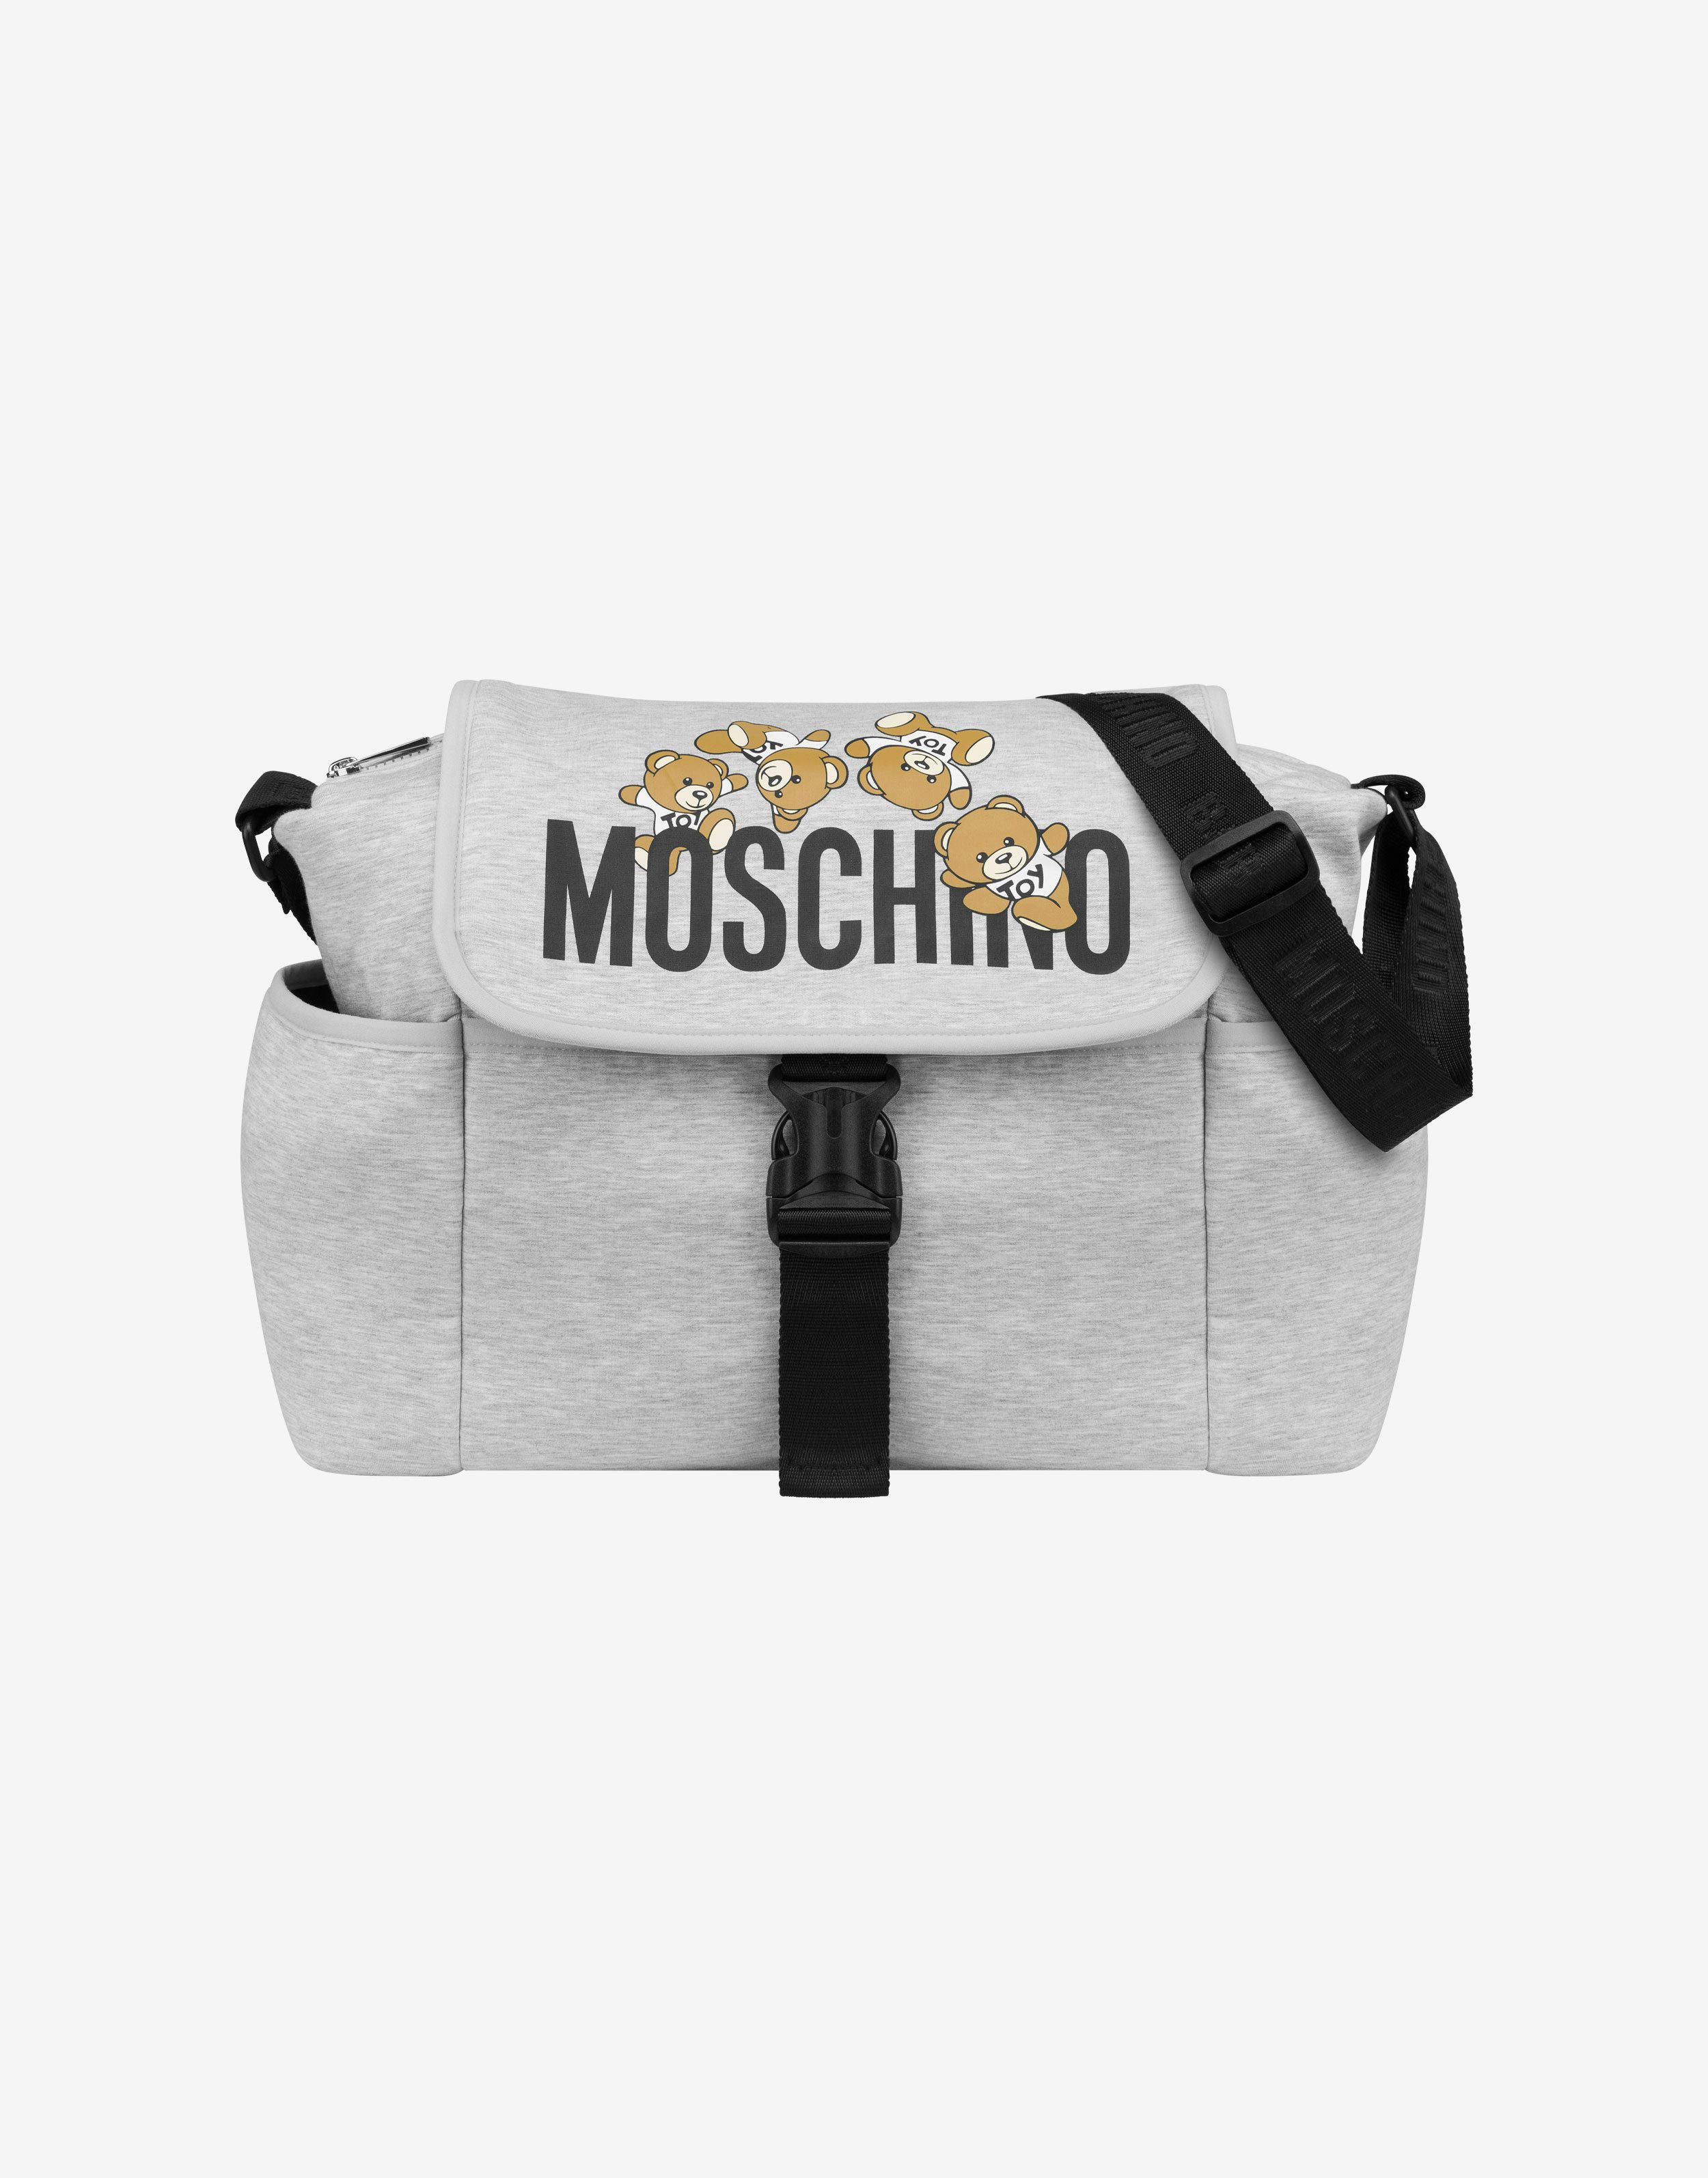 Moschino muttertasche mit wickelunterlage teddy logo